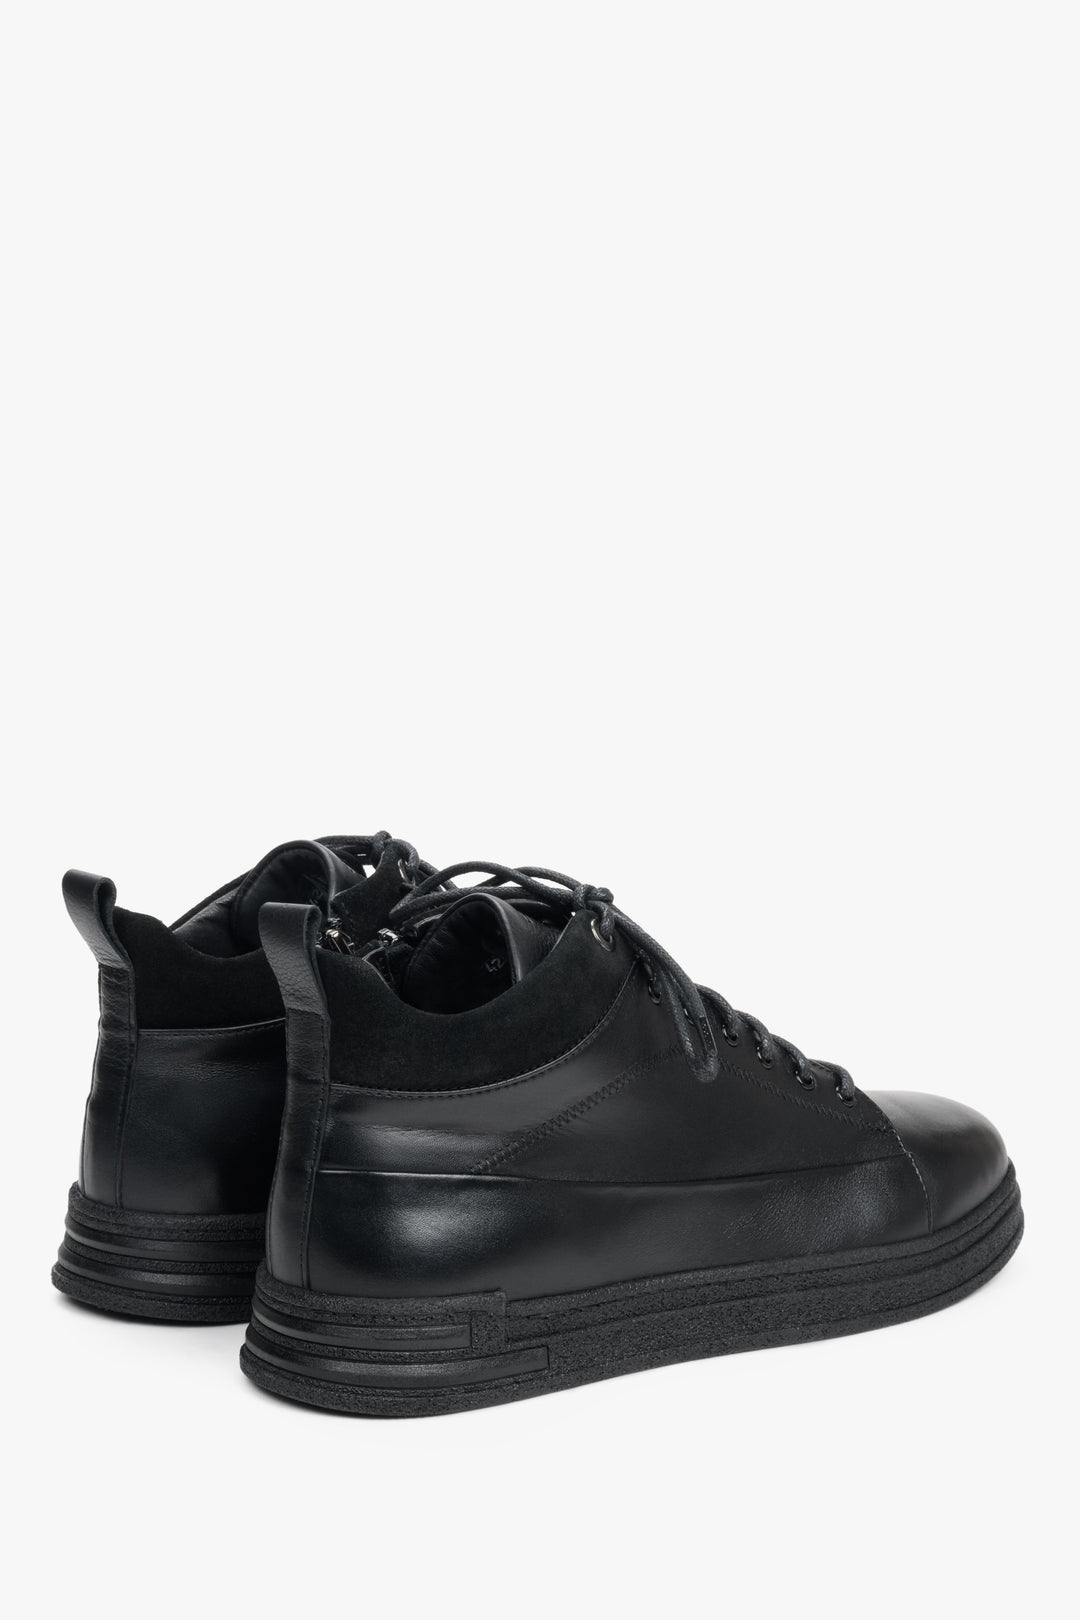 Wysokie, czarne trampki męskie ze skóry naturalnej marki Estro z suwakiem - zbliżenie na zapiętek buta.